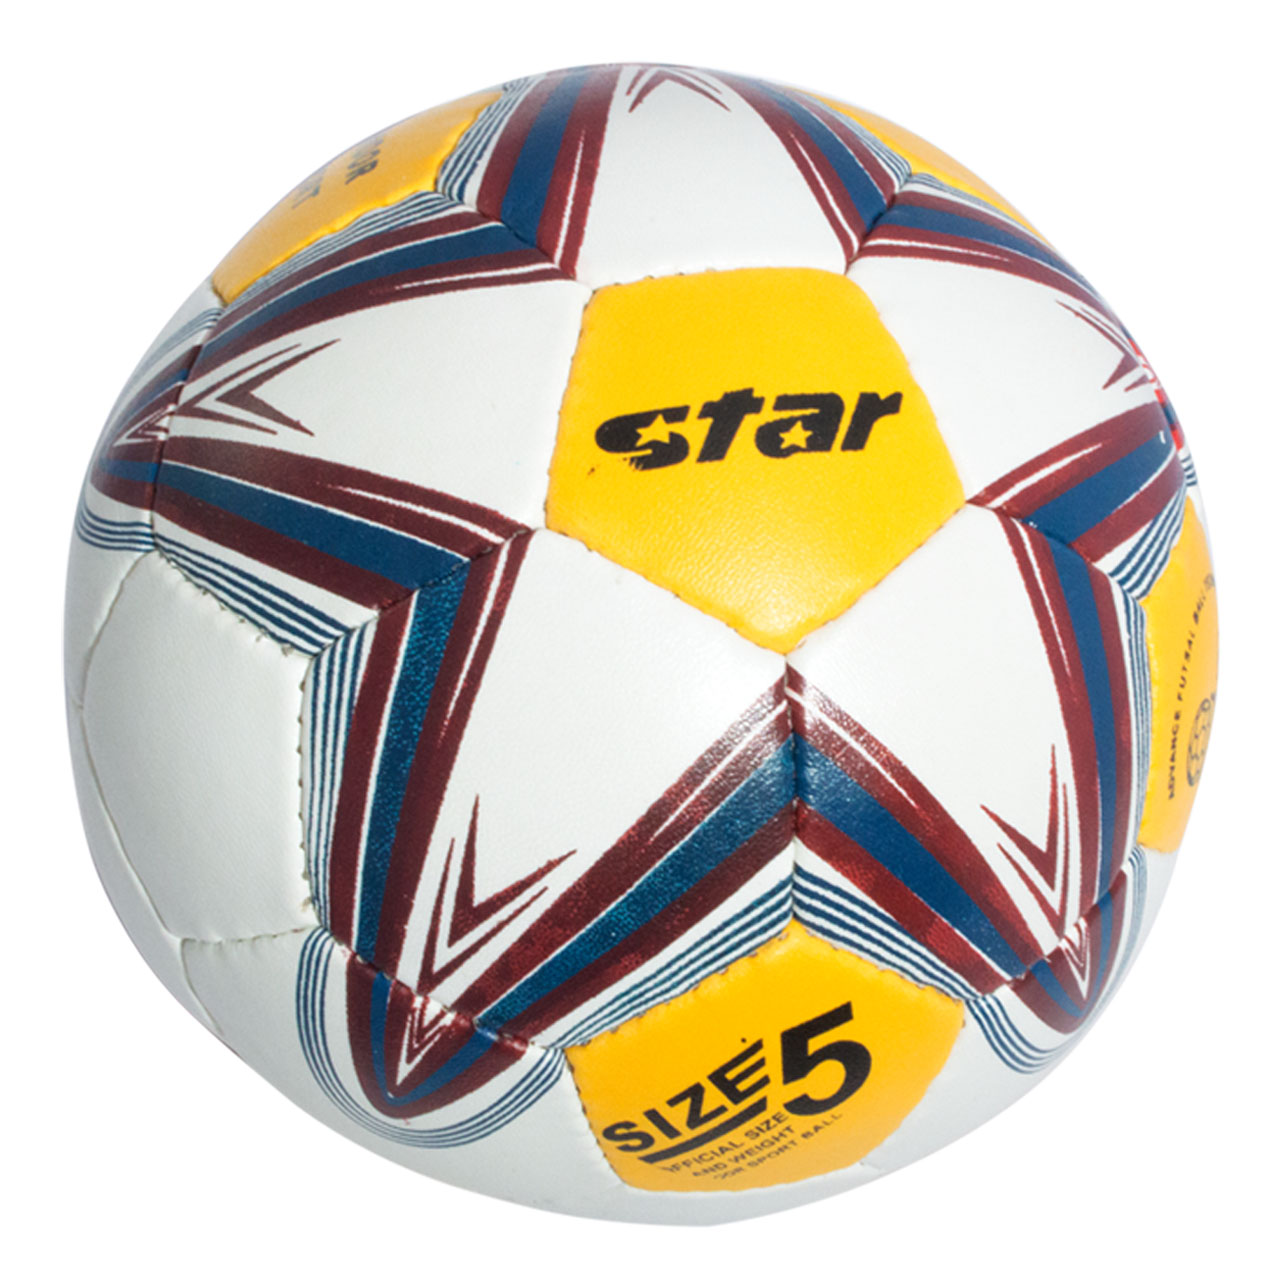 توپ فوتبال استار مدل Rm580 سایز 5